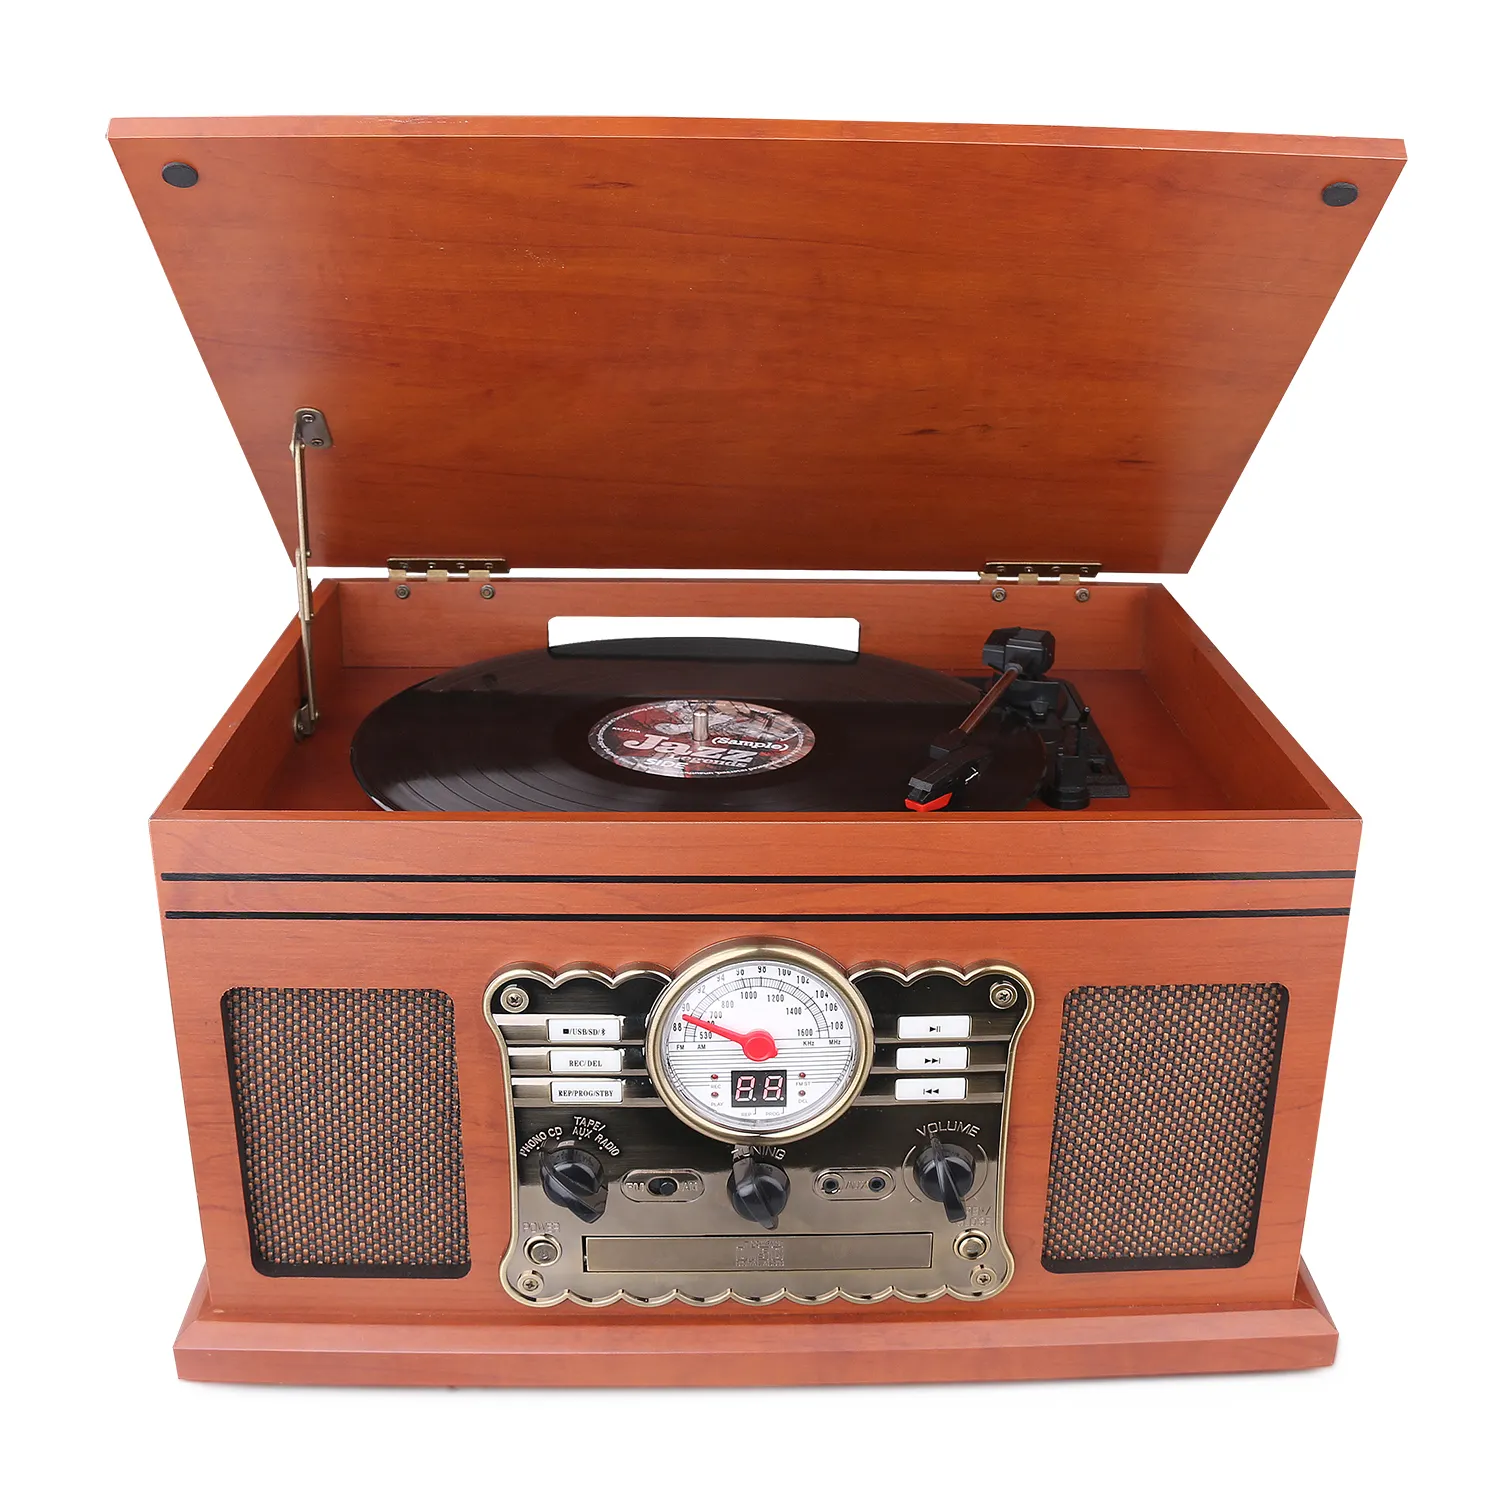 Pemutar musik gramofon antik, pemutar rekaman cd radio retro kayu polos